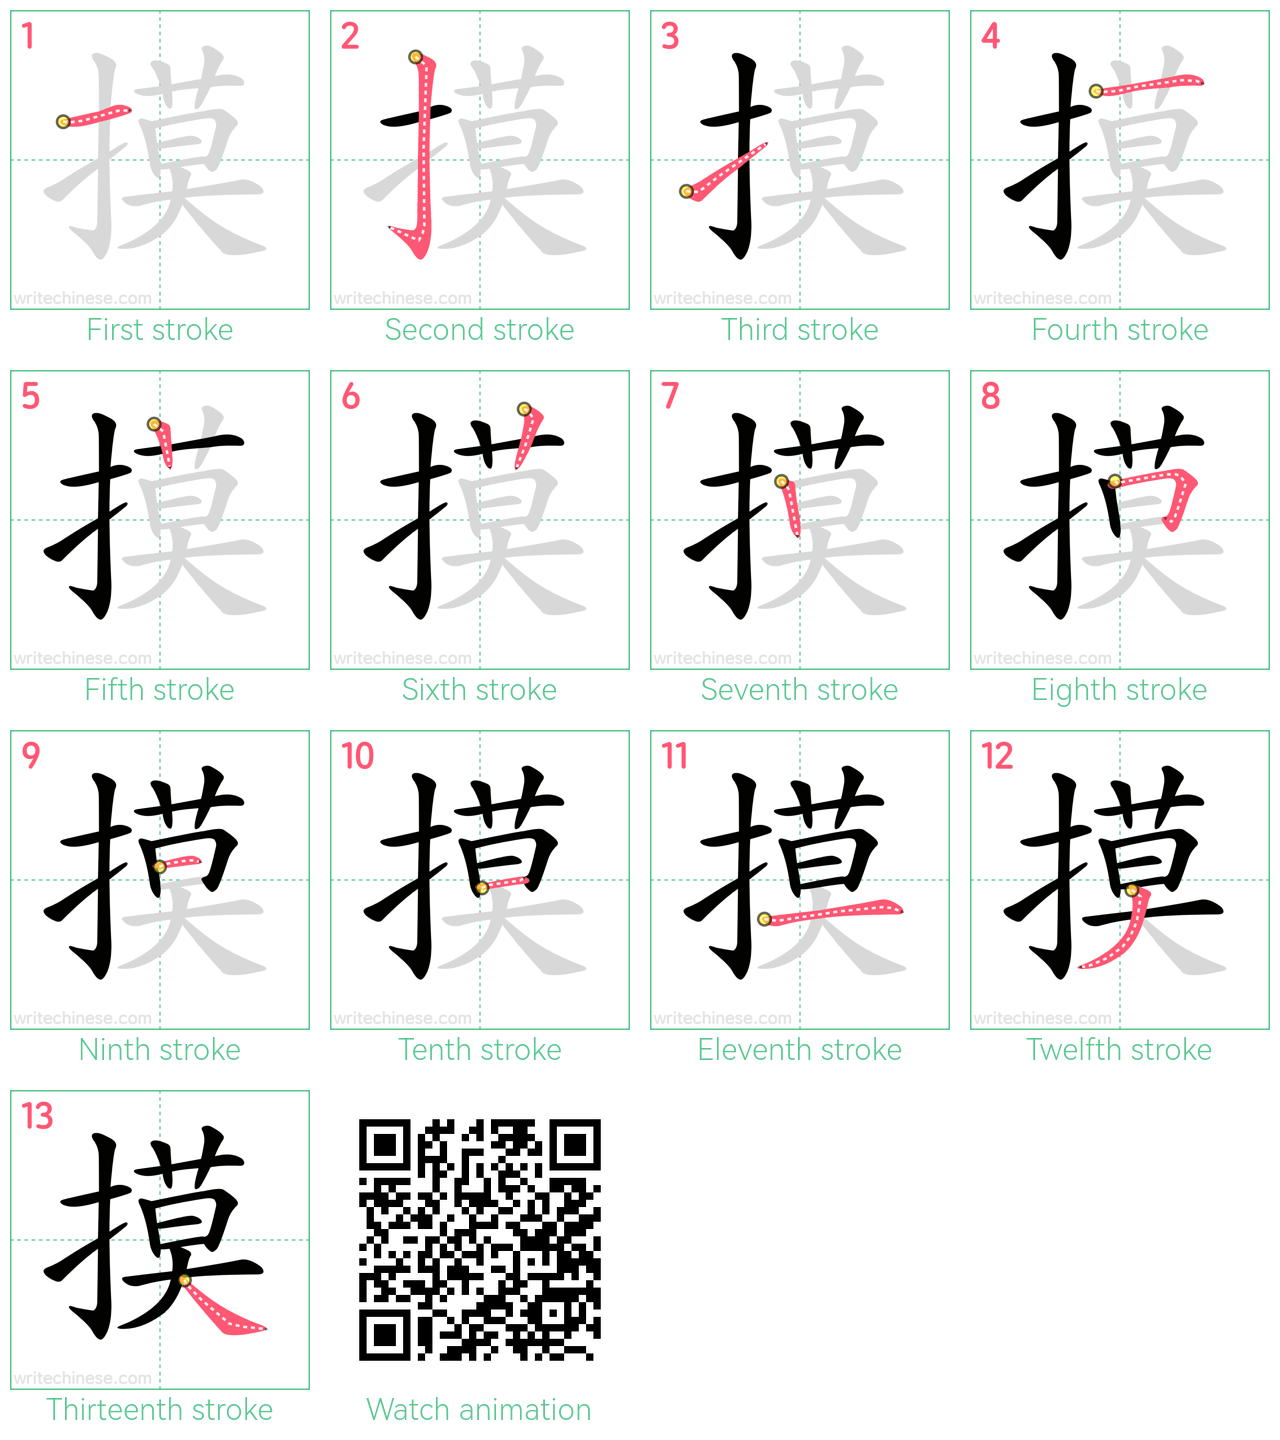 摸 step-by-step stroke order diagrams